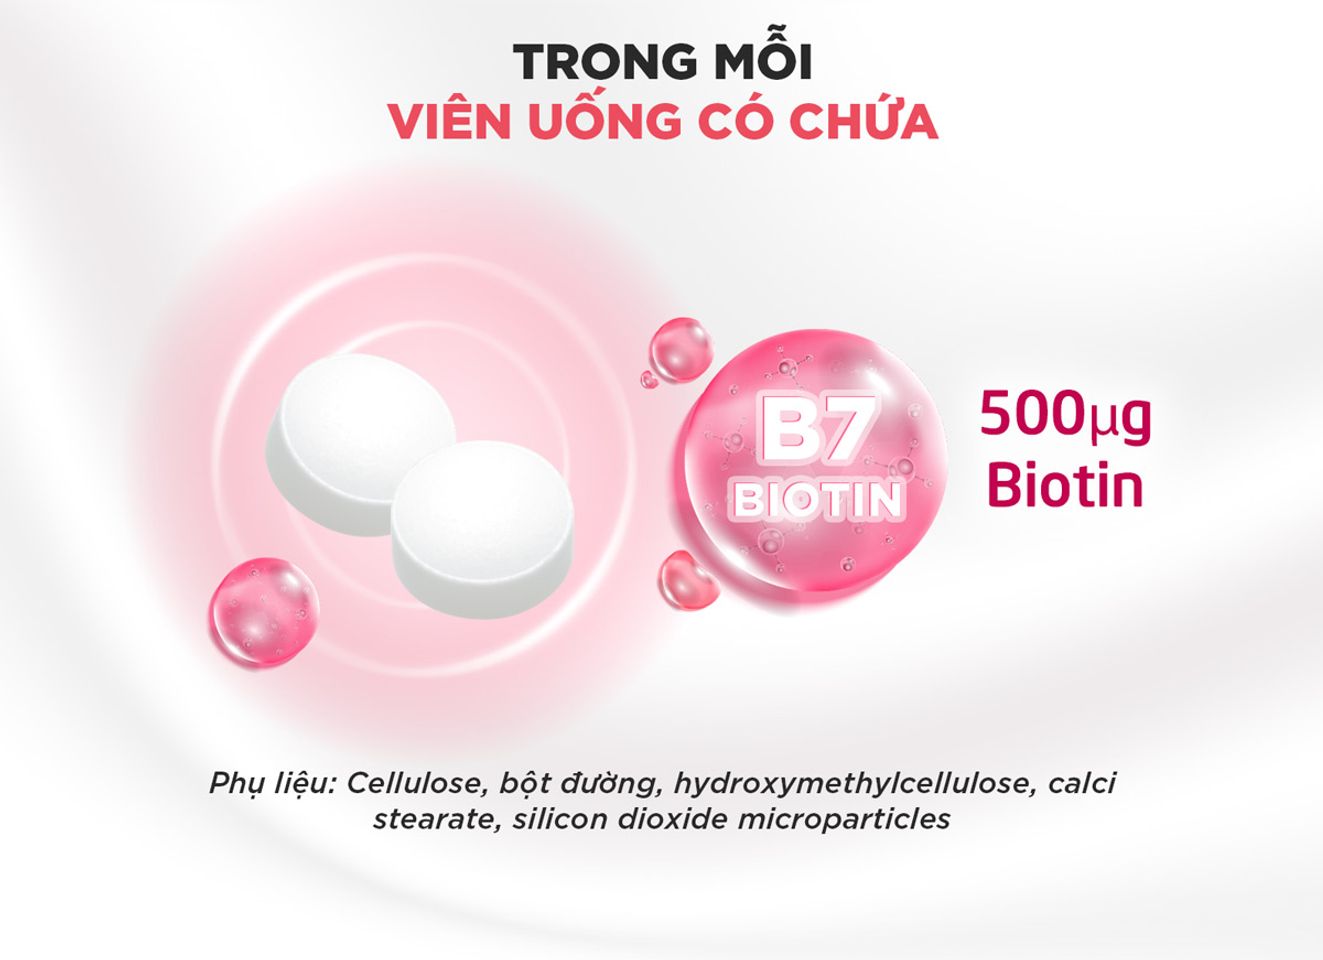 Viên Uống DHC Sustained Release Biotin giúp bổ sung hàm lượng 500μg* biotin thiết yếu cho cơ thể mỗi ngày